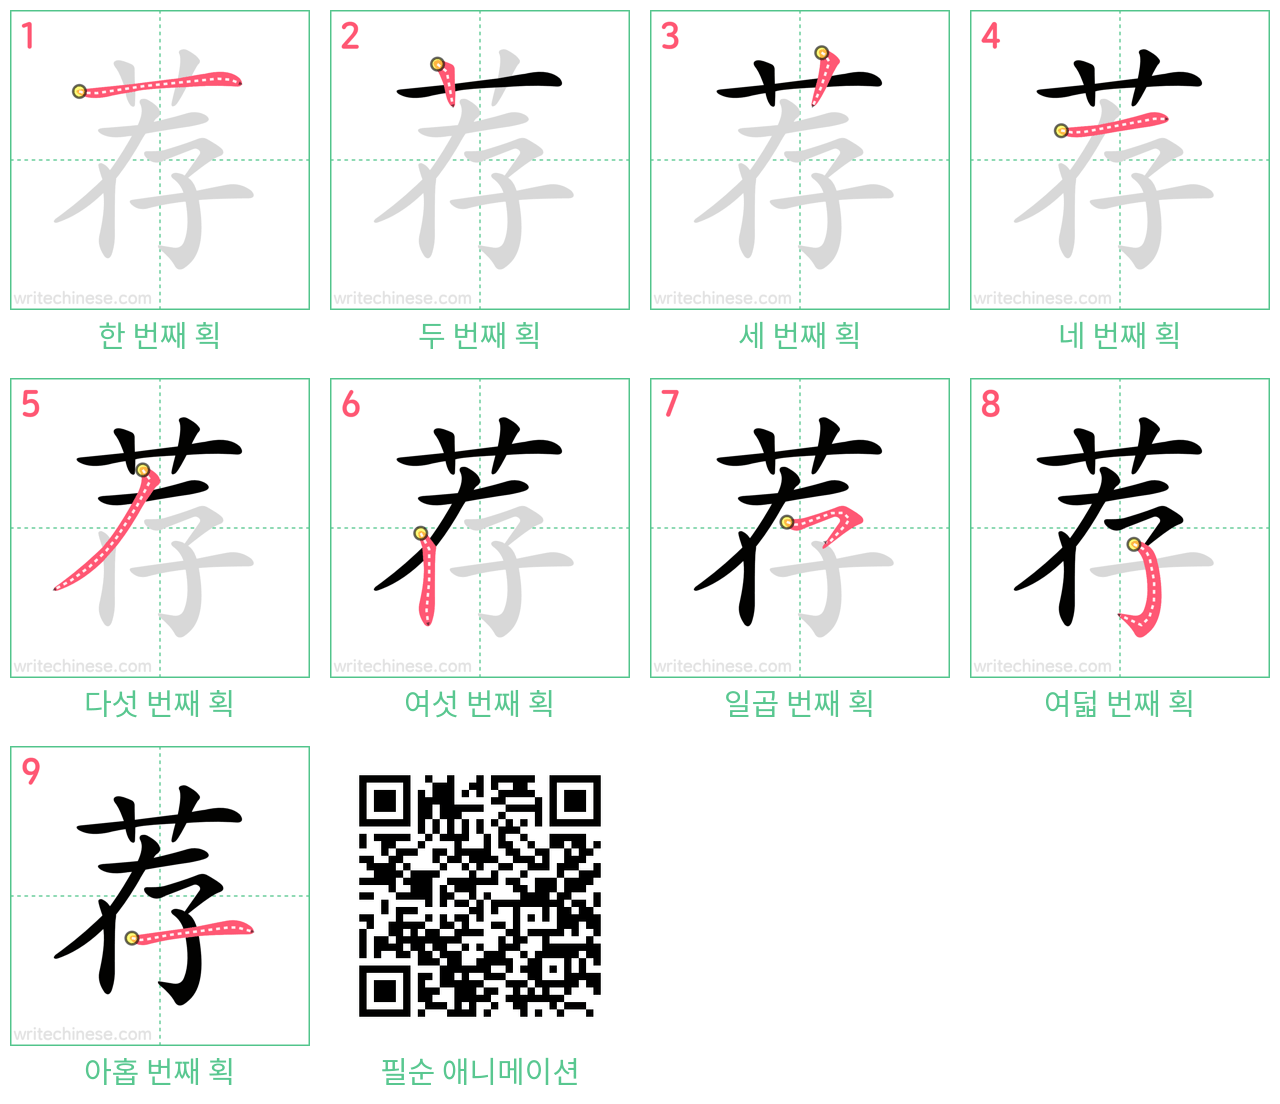 荐 step-by-step stroke order diagrams